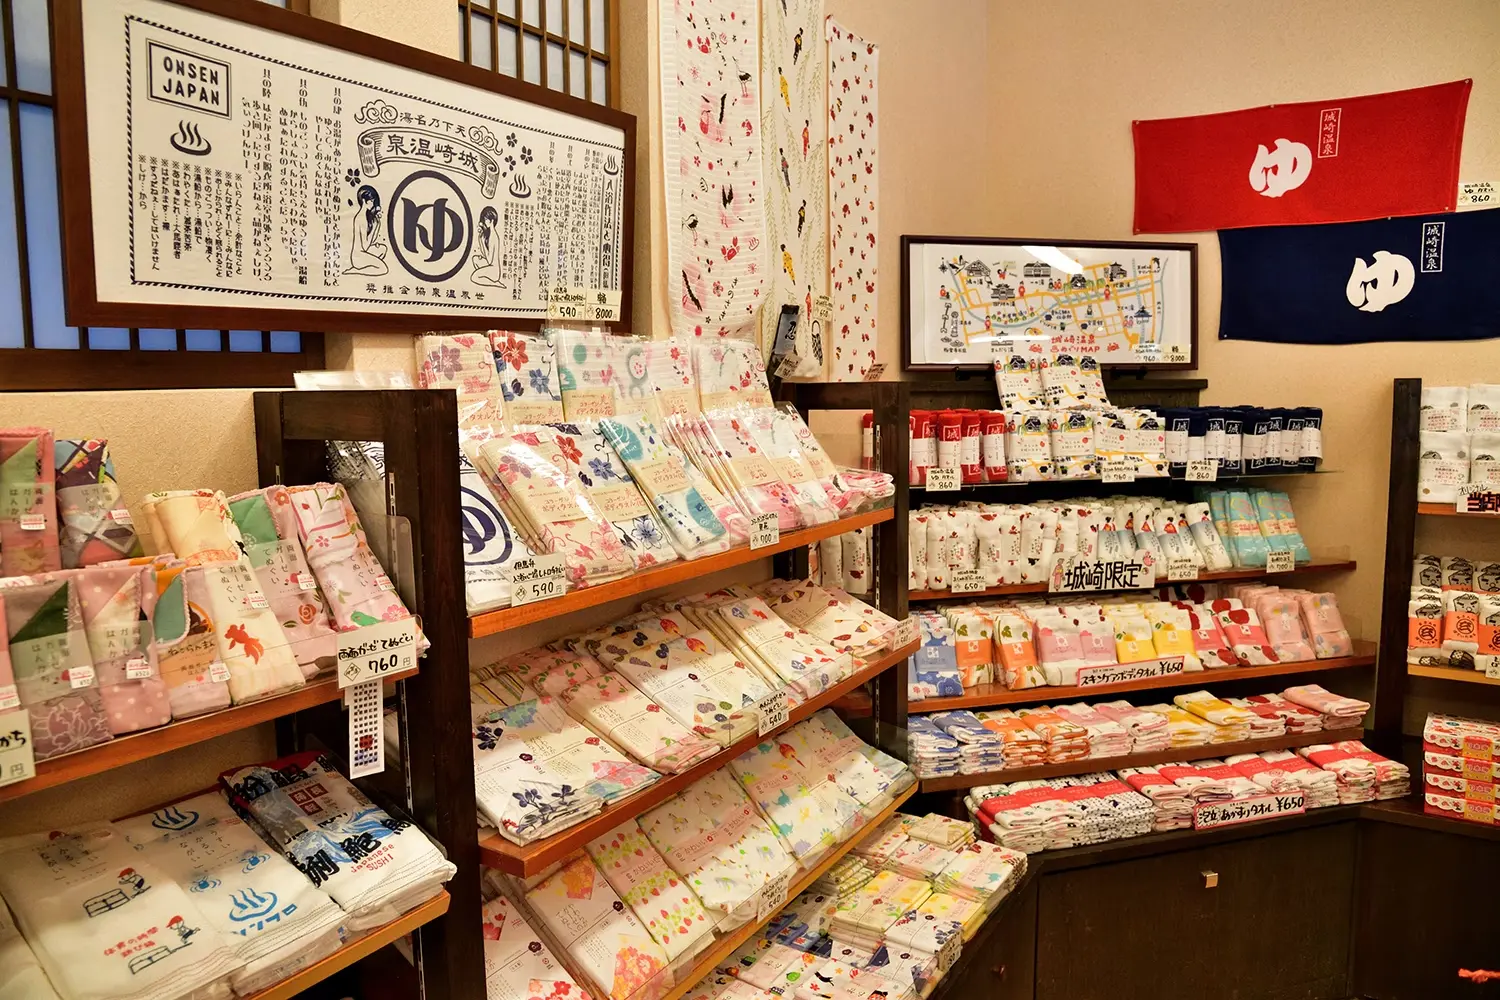 和雑貨では手ぬぐいや風呂敷、祝儀袋などが人気です。どれも日本独自のものなので、使い方を尋ねられることもあり、以前は説明に苦労することもありました。